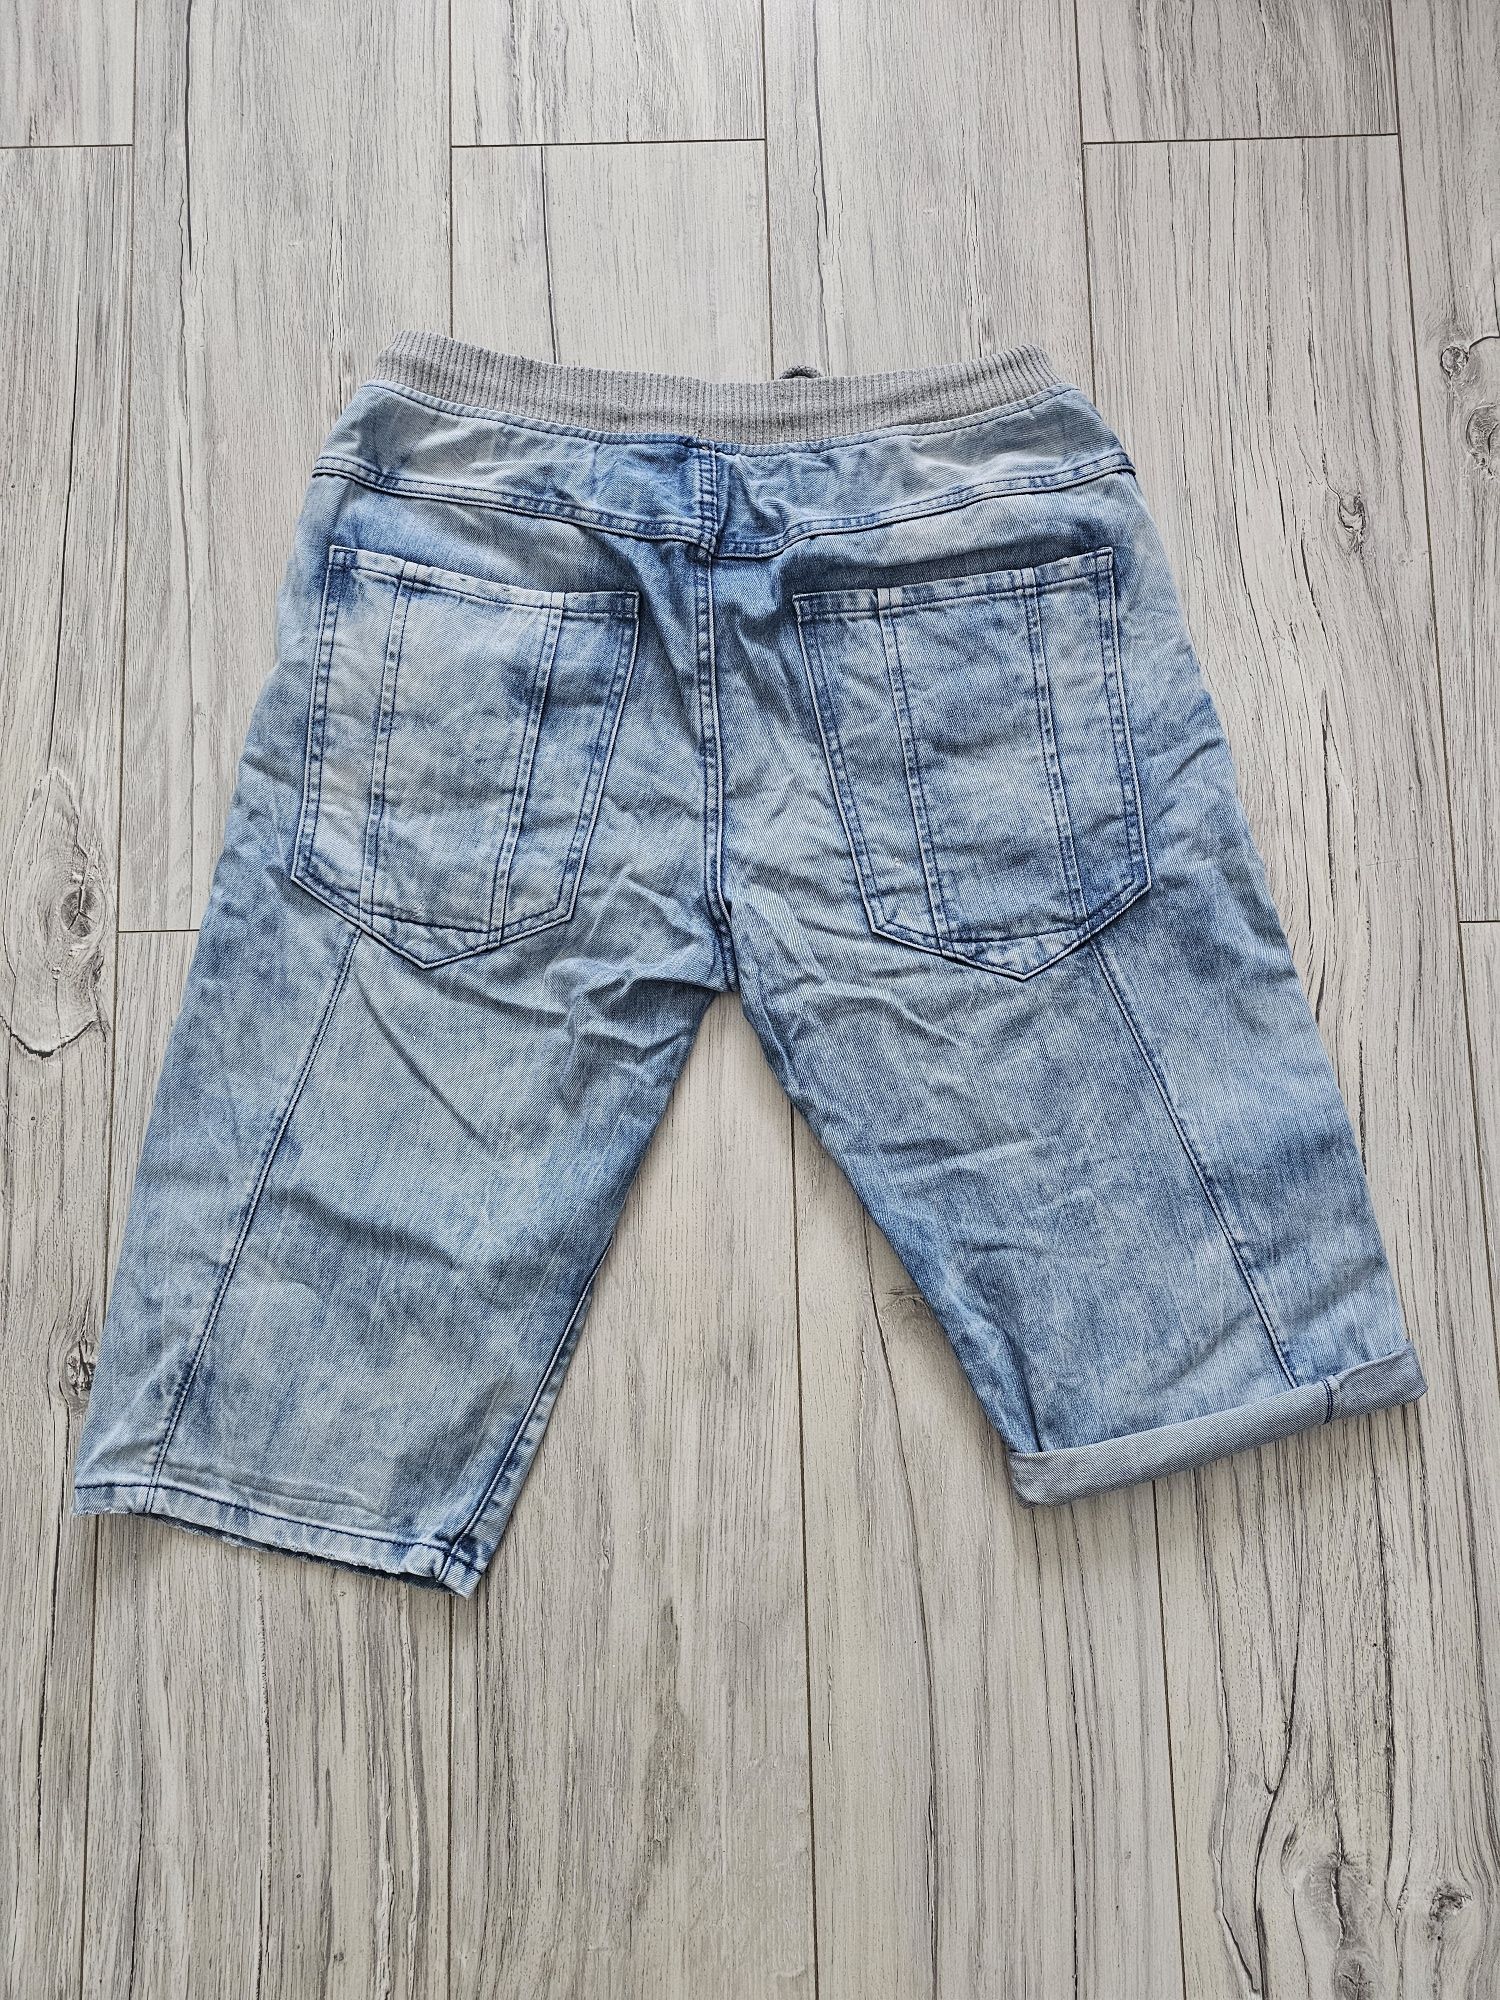 Szorty spodenki RESERVED w36 XL 3/4 jeans Dżinsy